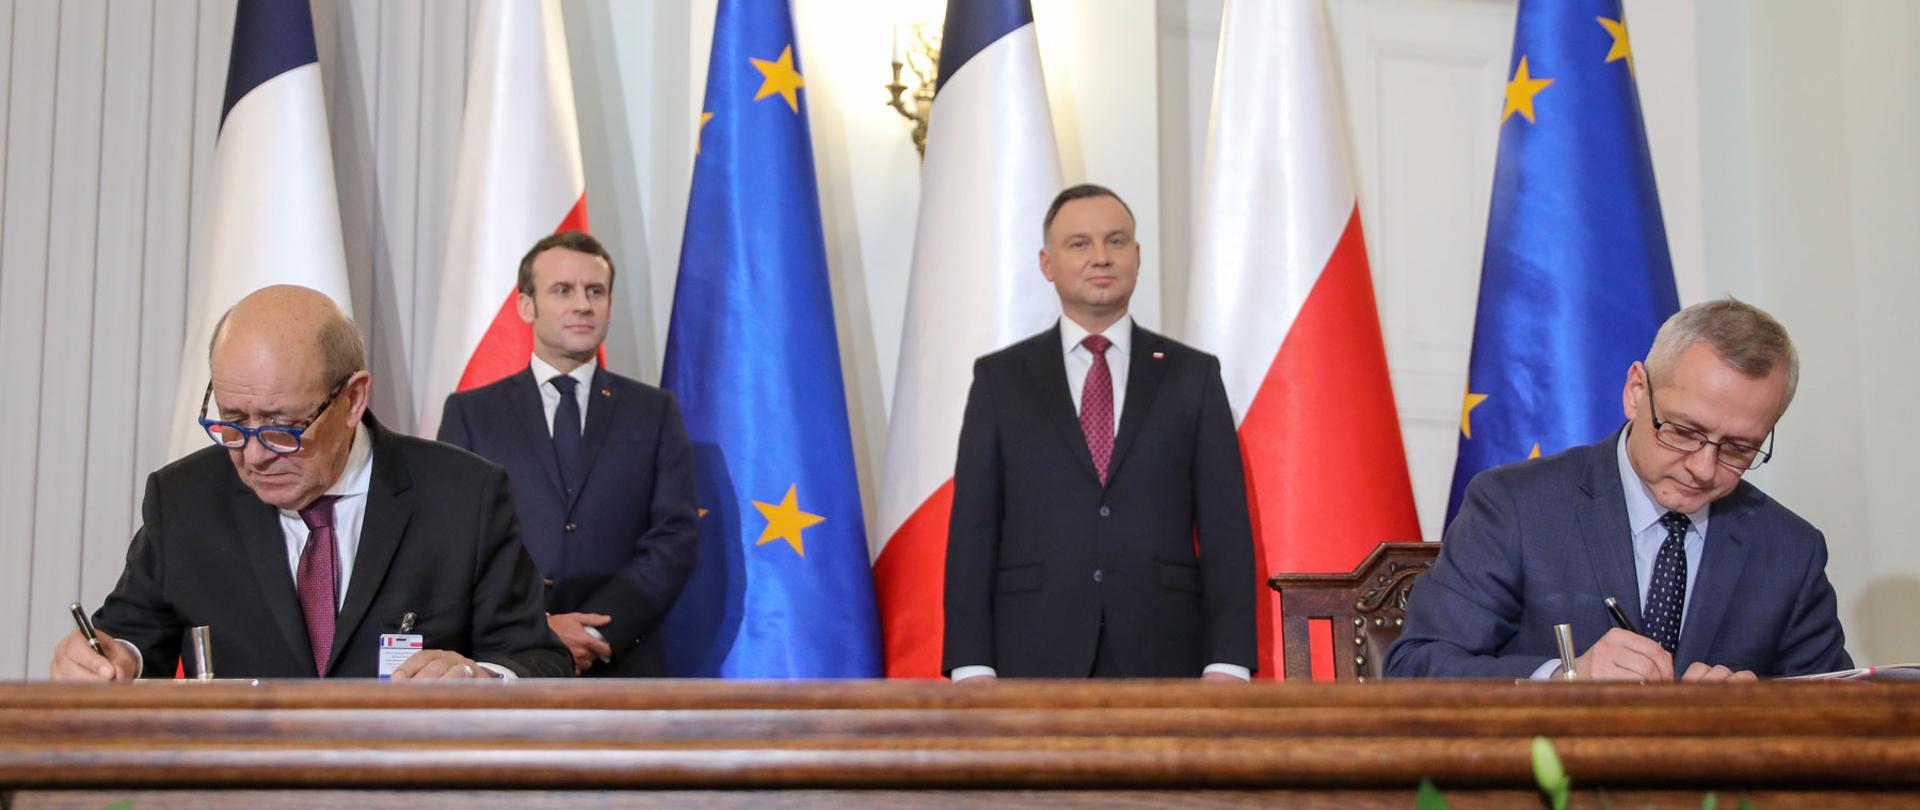 Moment podpisania deklaracji - przy stole (po lewej) minister Minister Europy i Spraw Zagranicznych Francji Jean-Yves Le Drian, (po prawej) Minister cyfryzacji RP Marek Zagórski. Za nimi stoją: (po lewej ) Prezydent Francji Emmanuel Macron, (po prawej) Prezydent RP Andrzej Duda